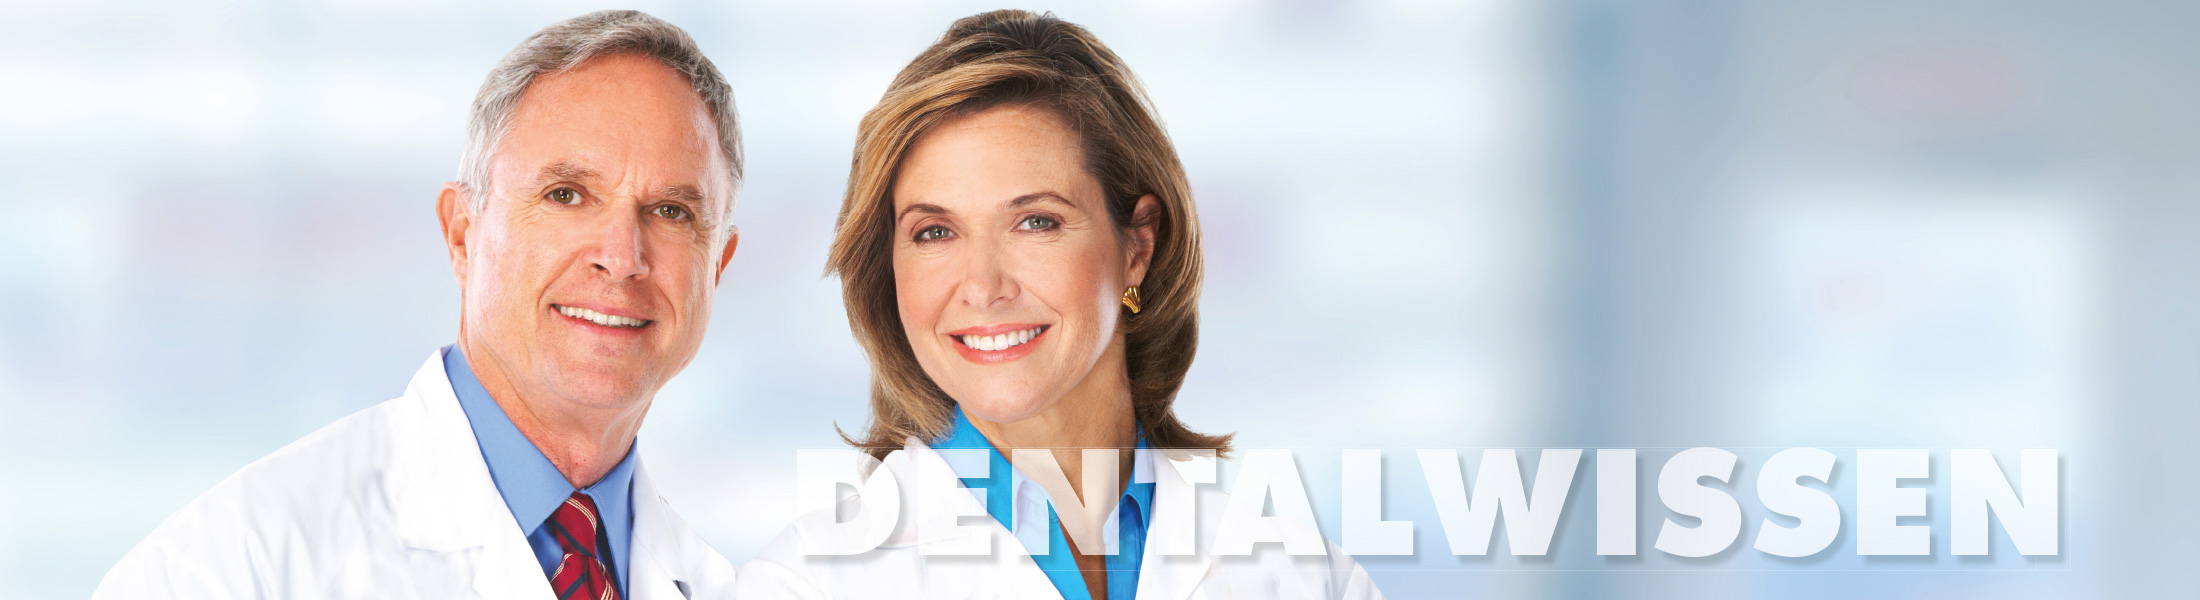 Dentalwissen-Behandlung 